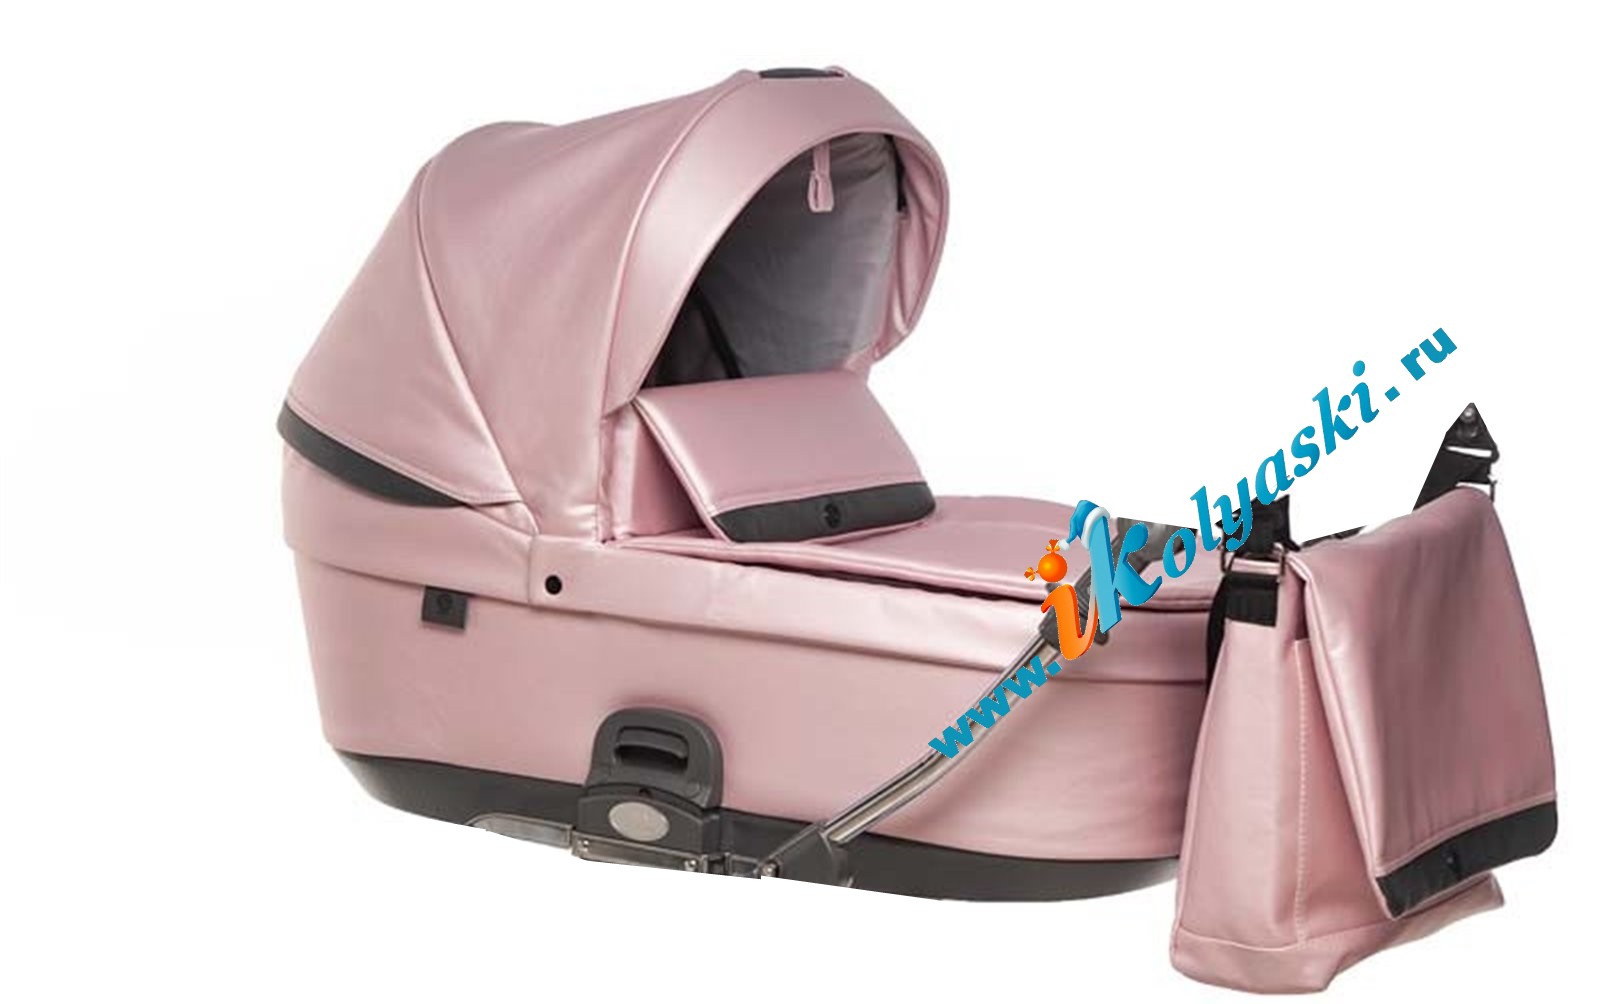 Коляска 3 в 1 Roan Bloom Pink Pearl для новорожденных - новинка 2020 - на фото люлька